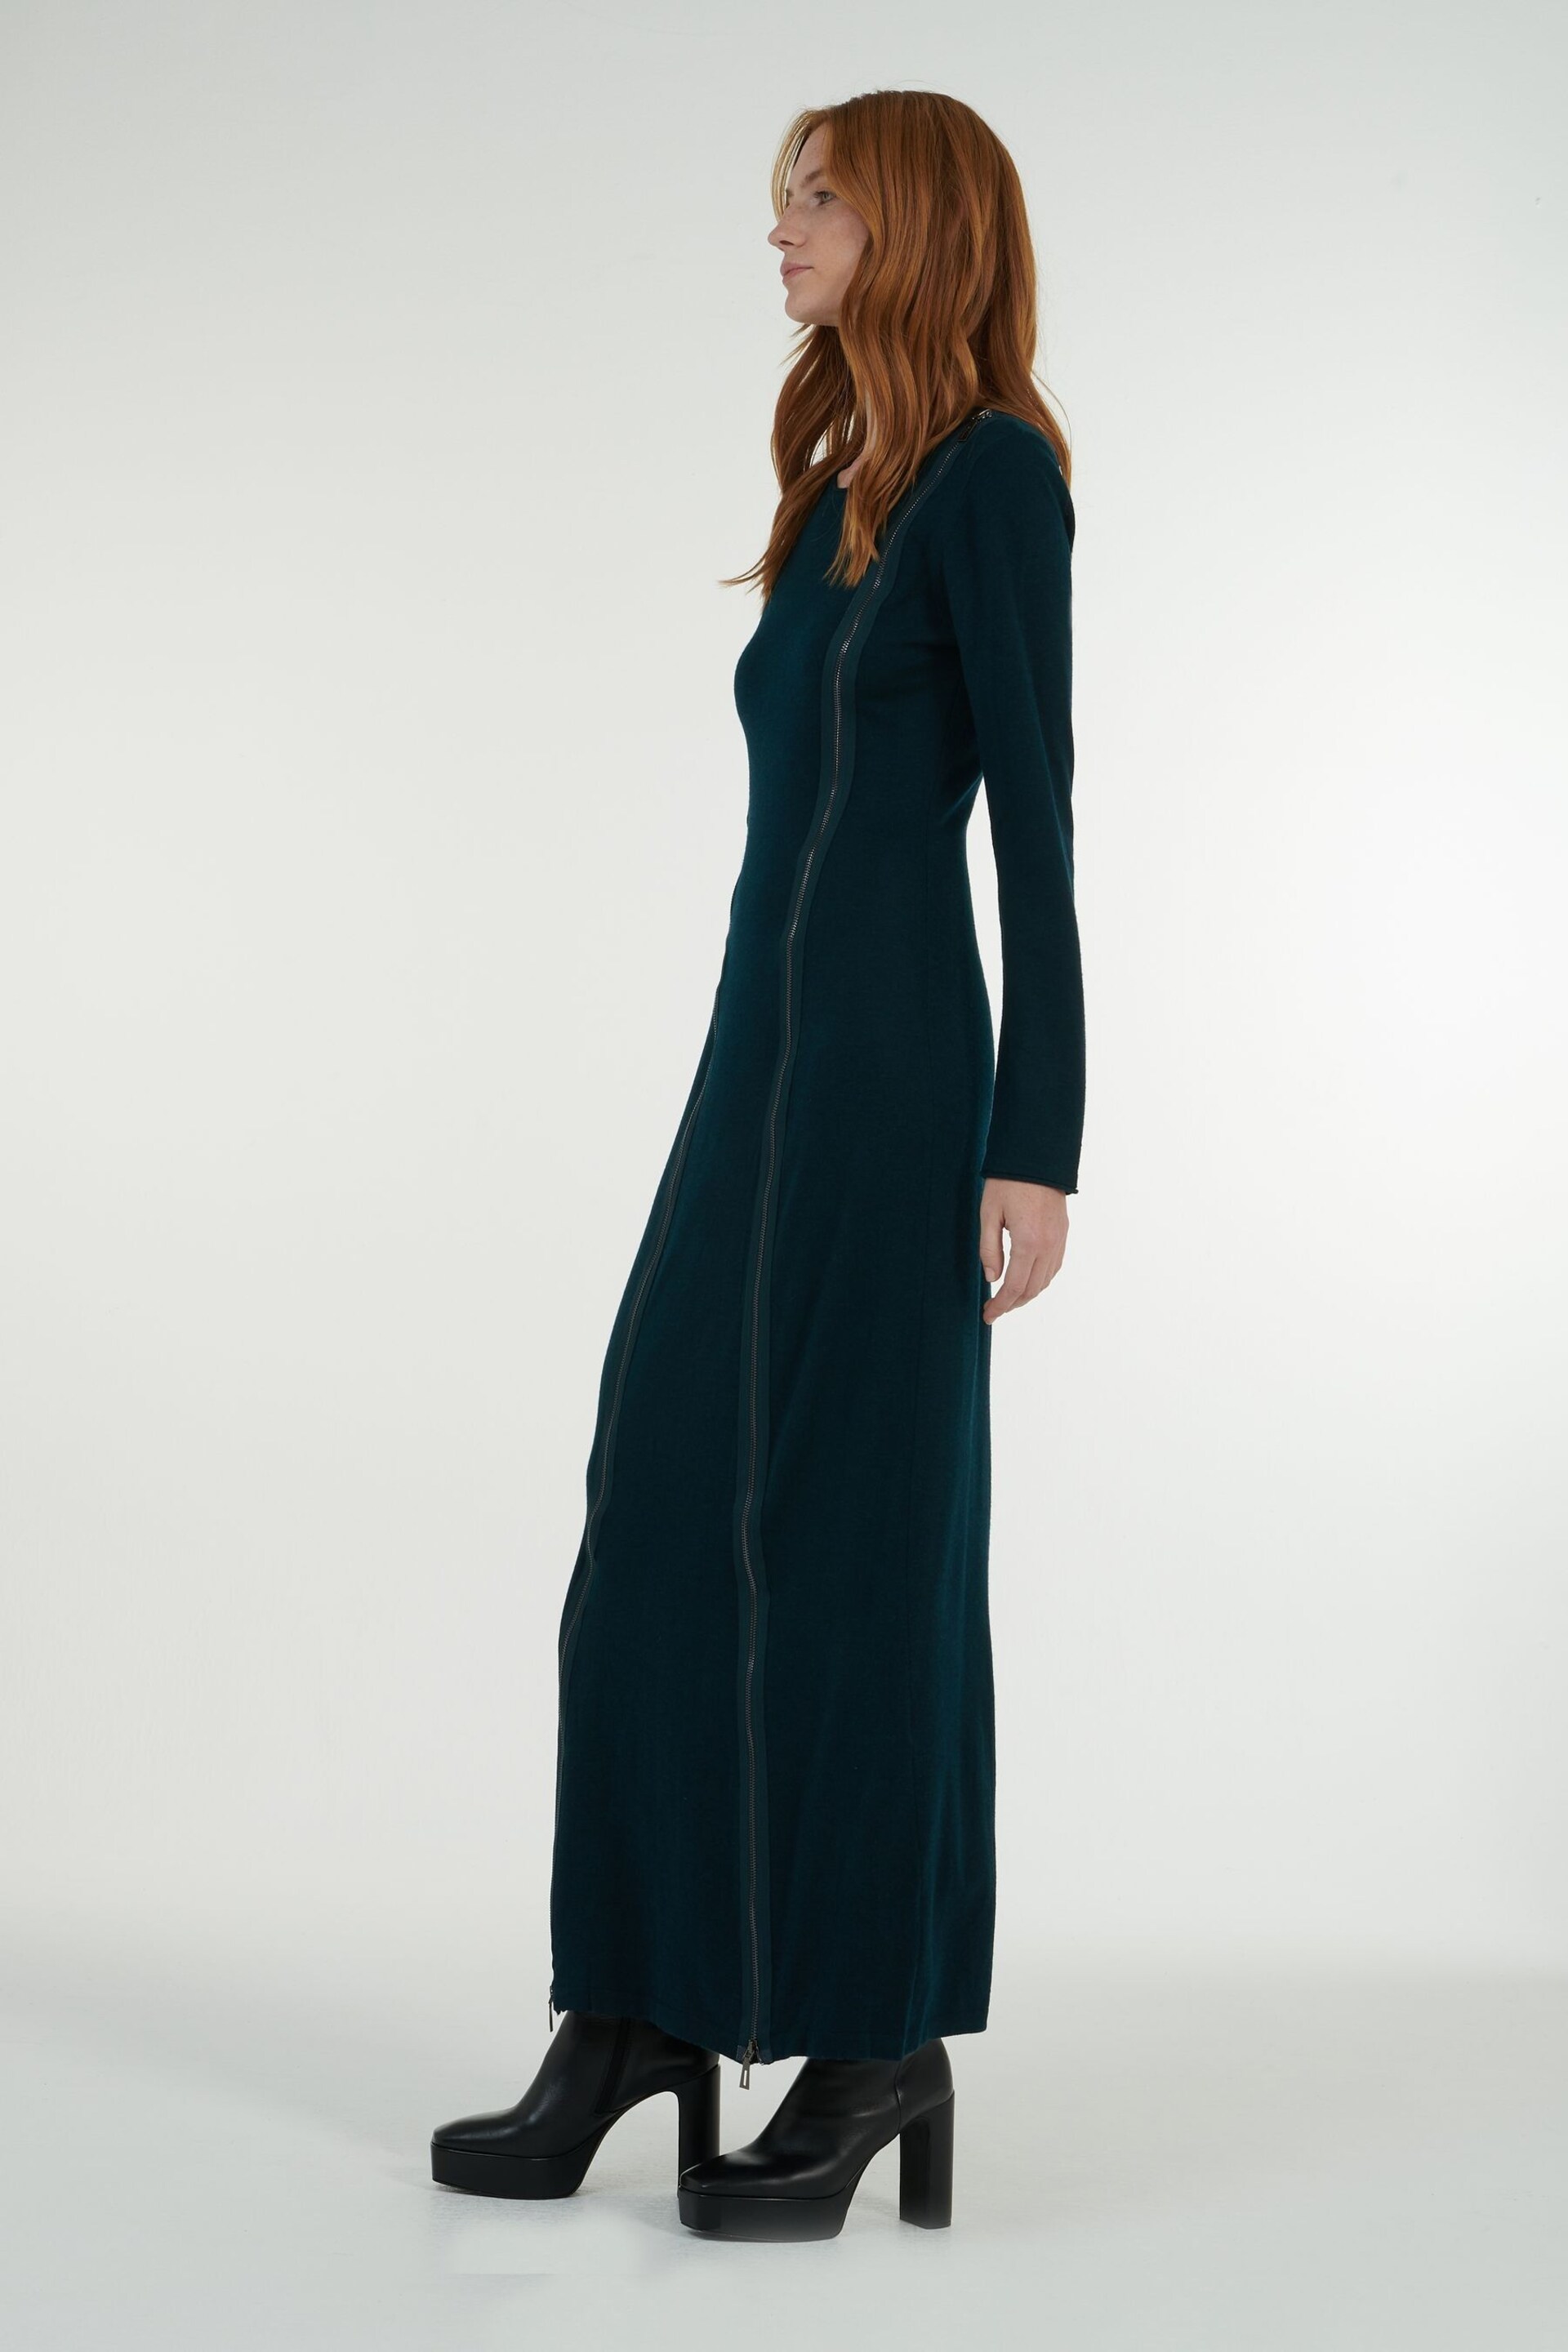 leem Green Full-Length Knitted Dress - Image 3 of 6